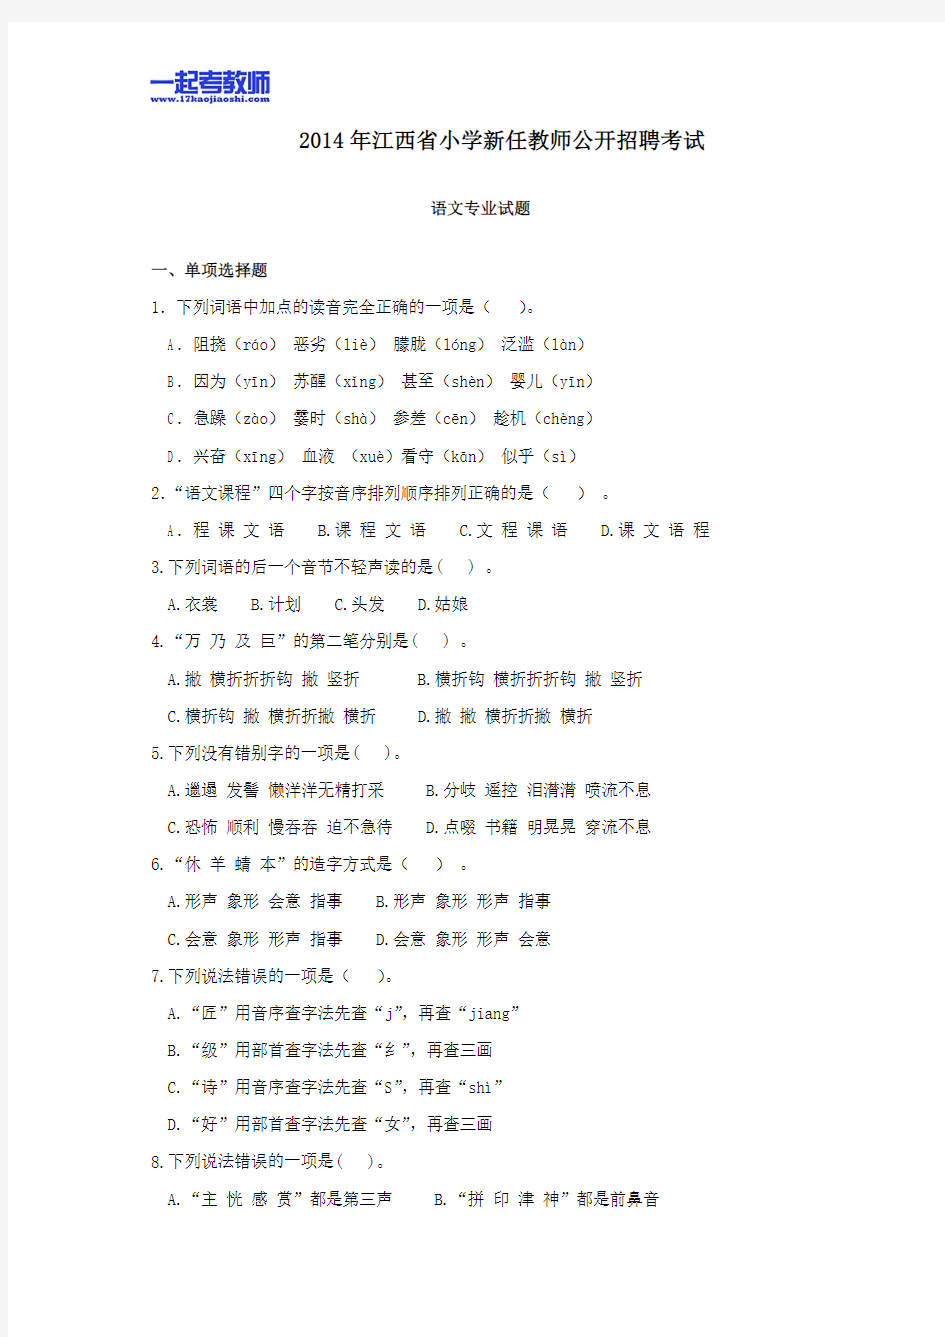 2014年江西省教师招聘考试笔试语文小学学段真题答案解析